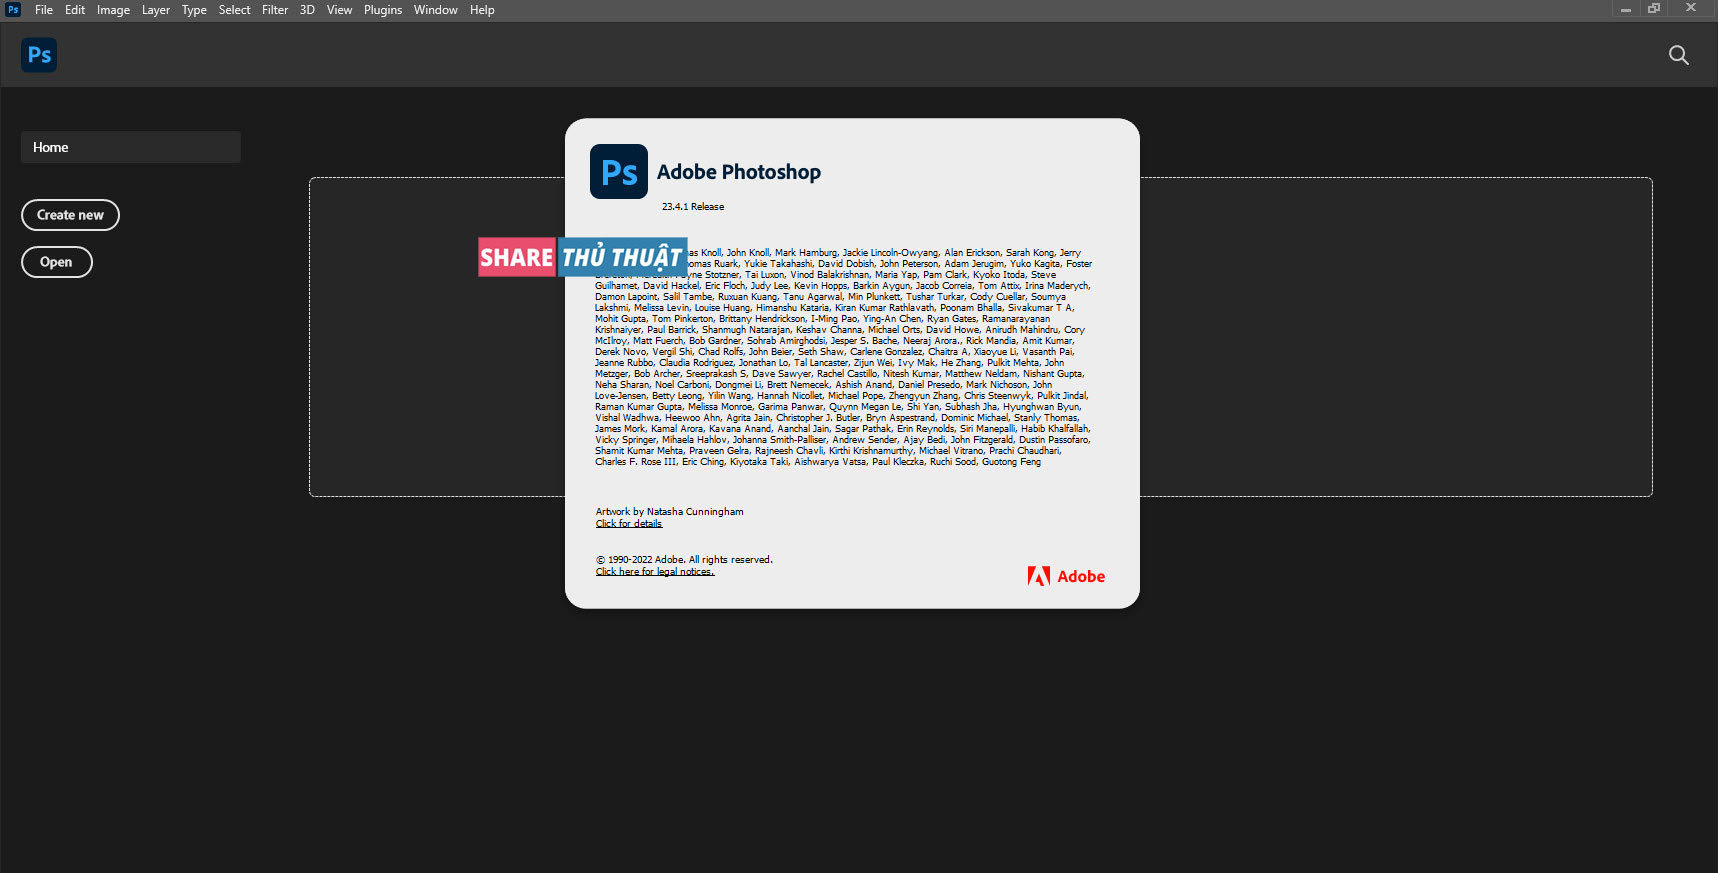 active Adobe Photoshop 2022